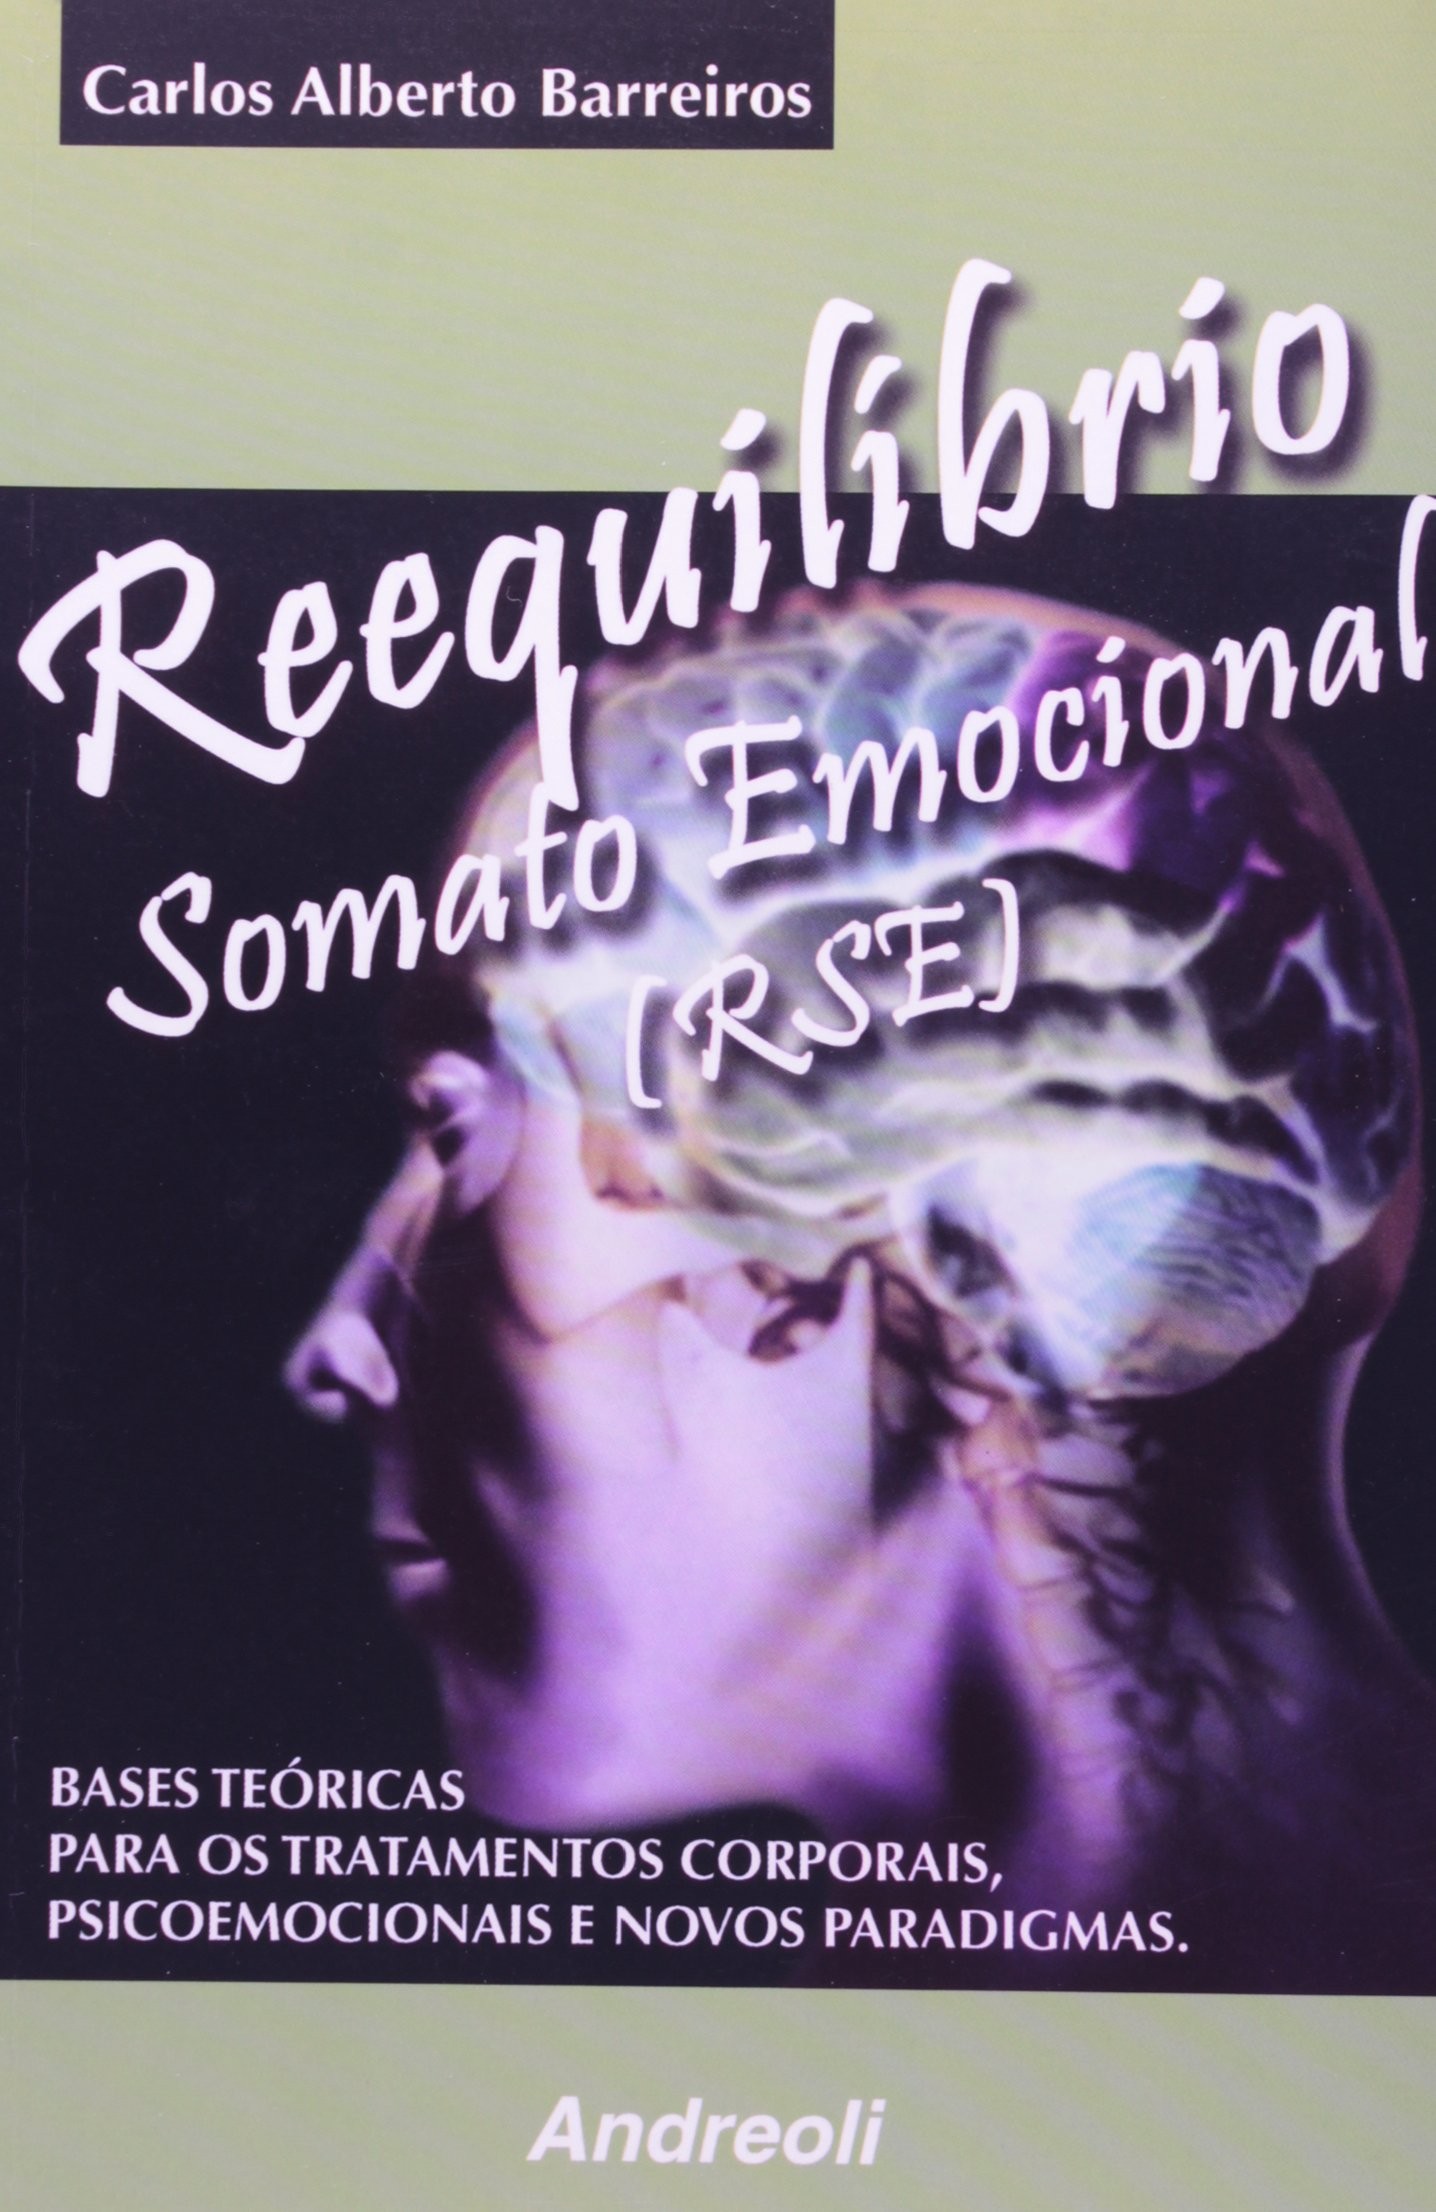 Reequilíbrio Somato Emocional (RSE) - Bases Teóricas para os Tratamentos Corporais, Psicoemocionais